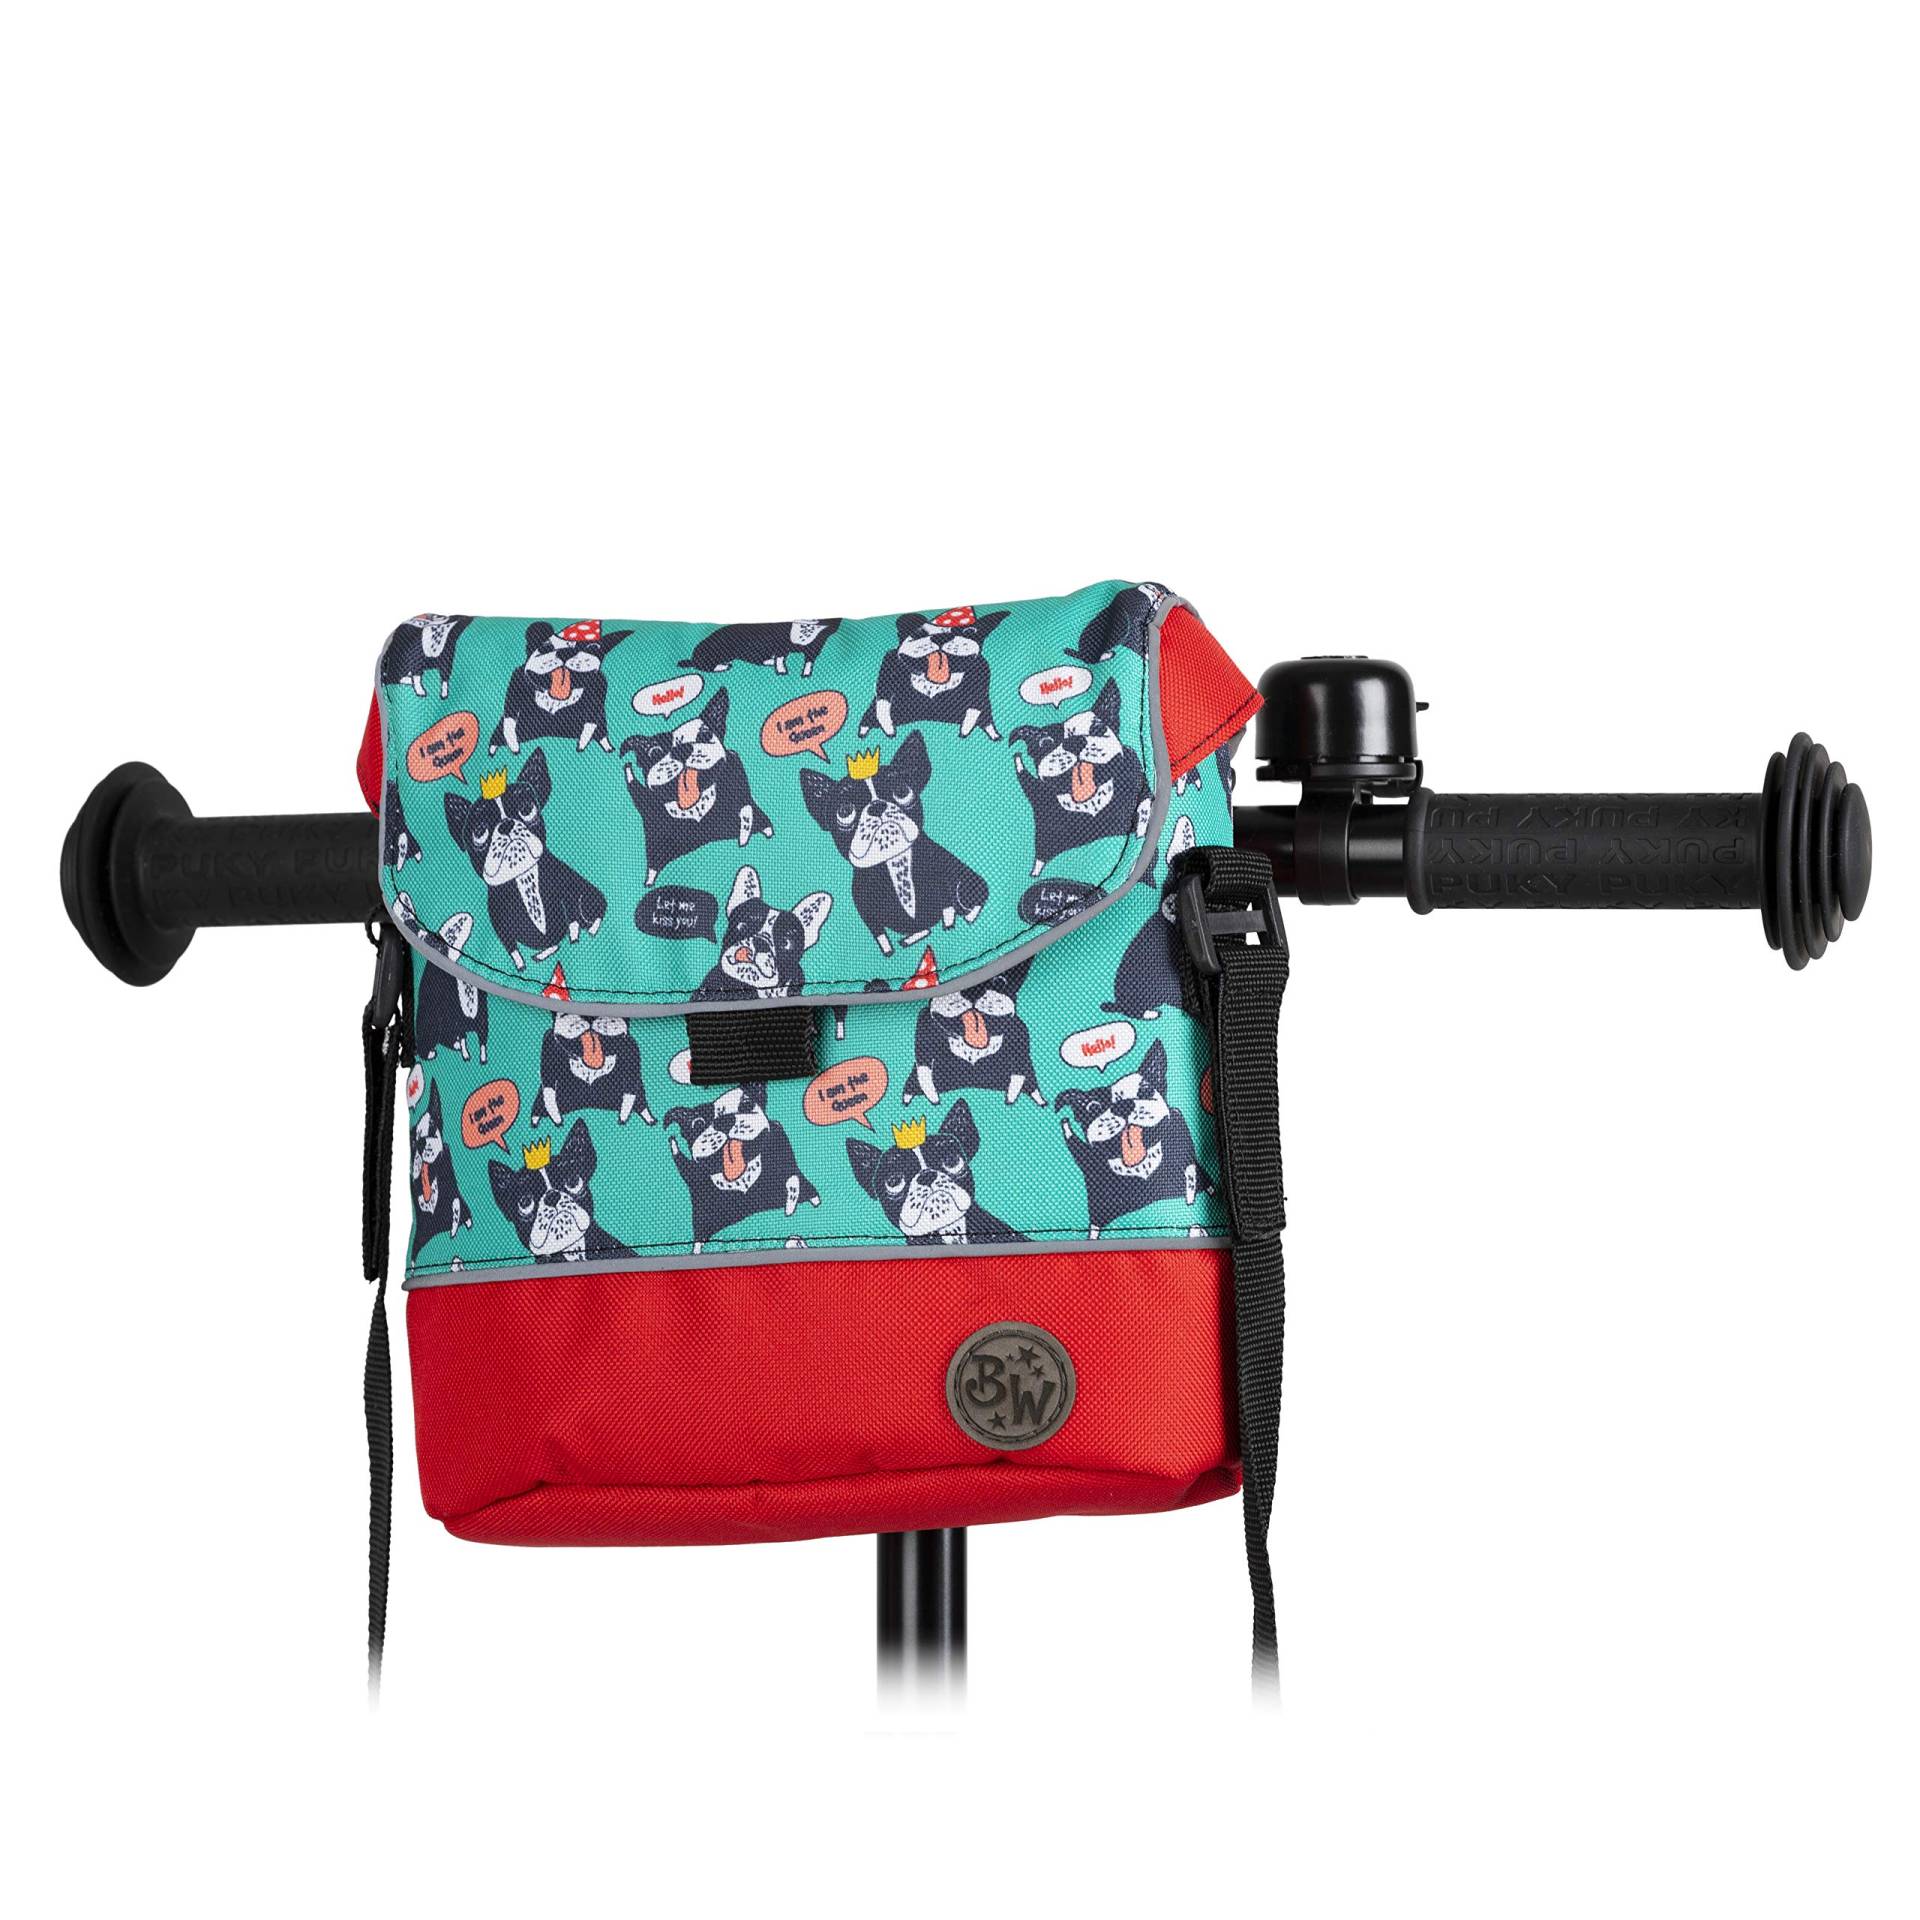 BAMBINIWELT Lenkertasche Tasche kompatibel mit Puky mit Woom Laufrad Räder Roller Fahrrad Fahrradtasche für Kinder wasserabweisend mit Schultergurt (Modell 15) von BambiniWelt by Rafael K.